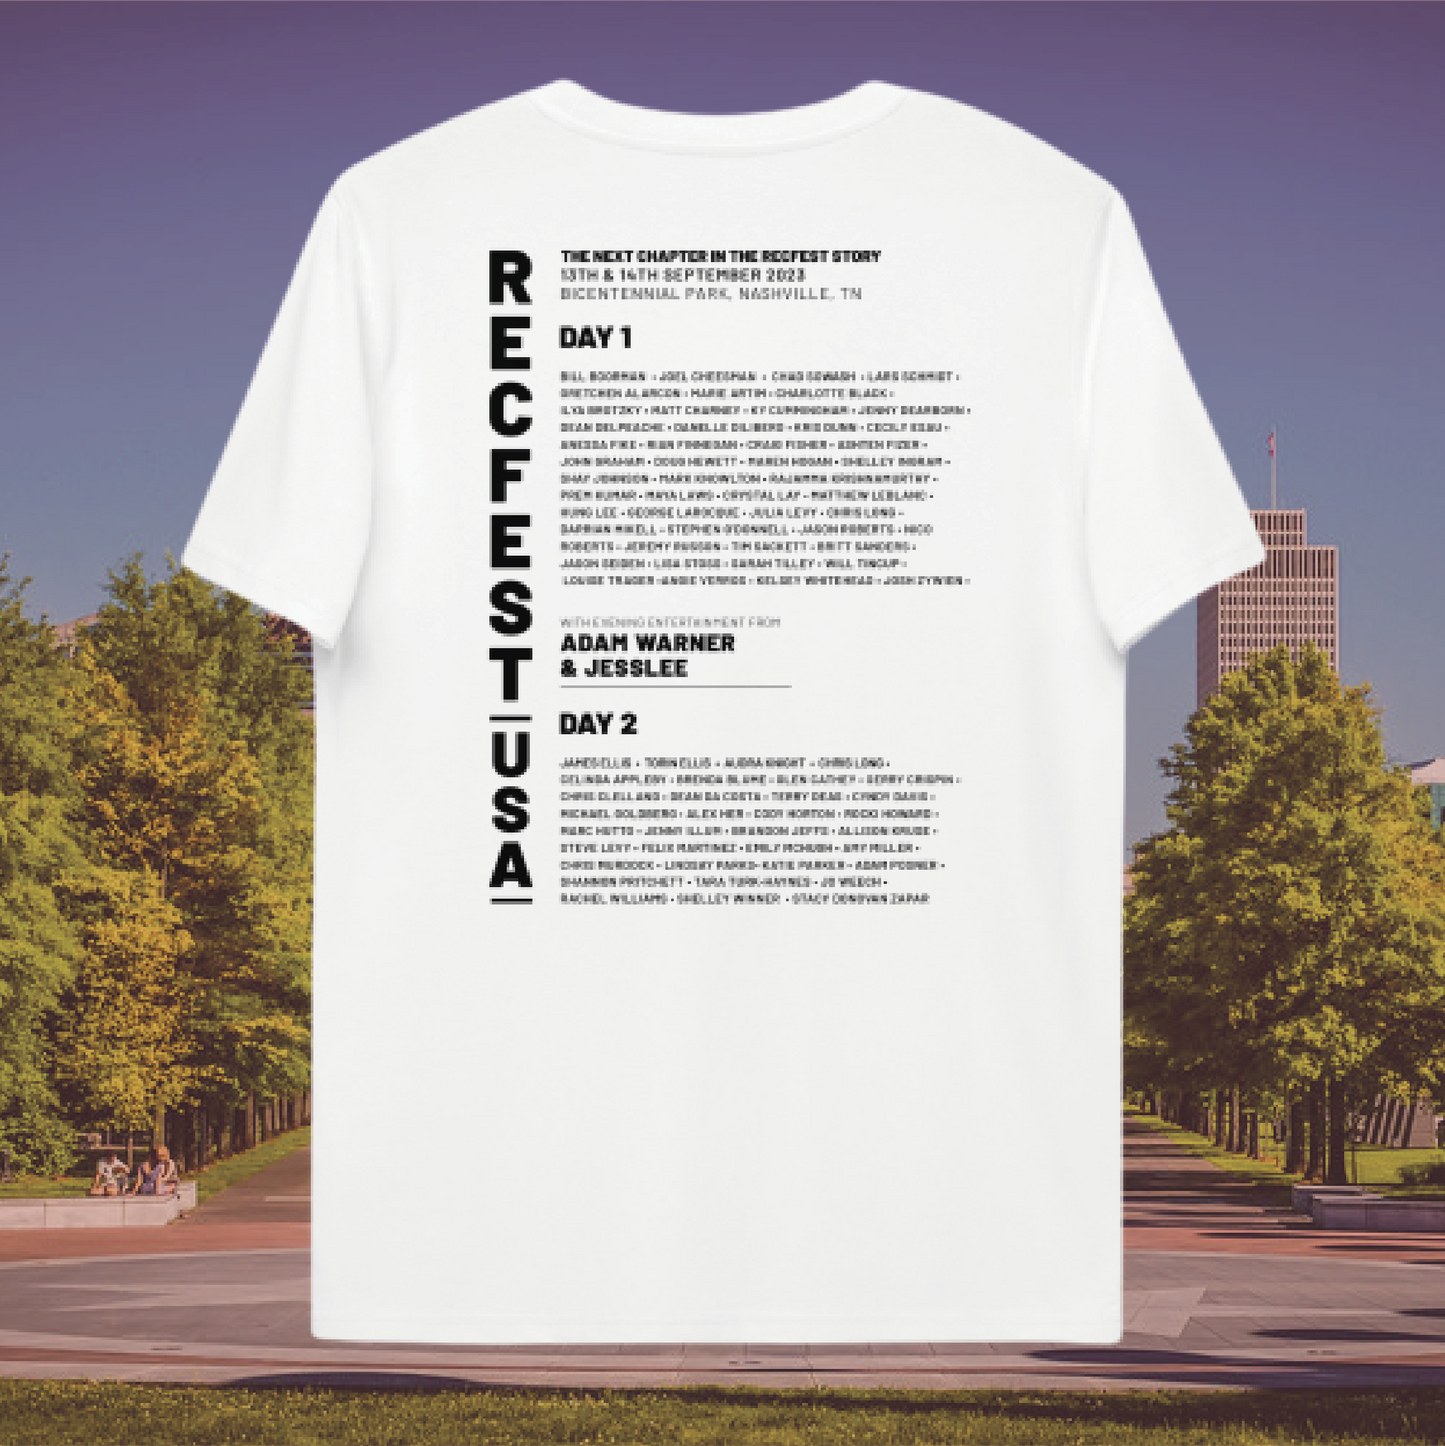 RecFest USA: Line-up T-Shirt